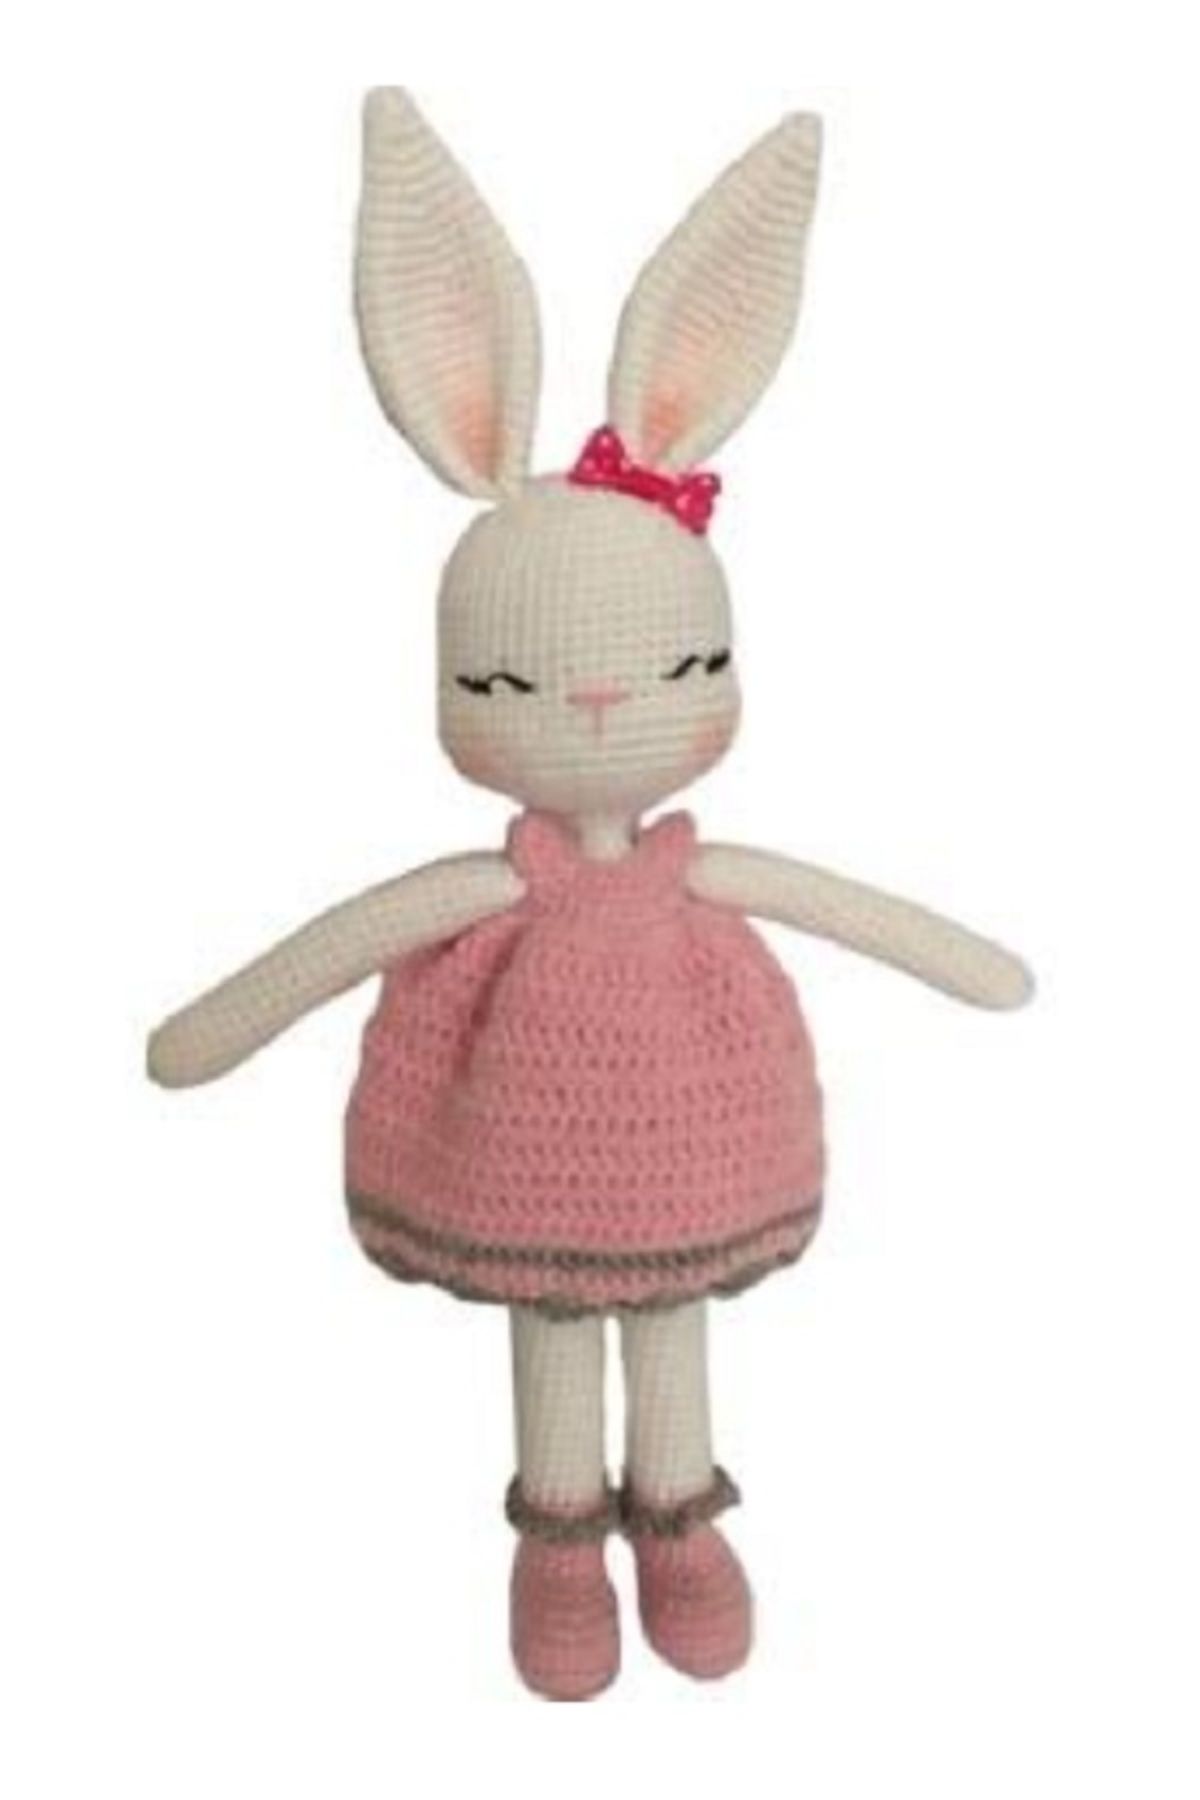 özgüven oto giyim Amigurumi Oyuncak Tavşan